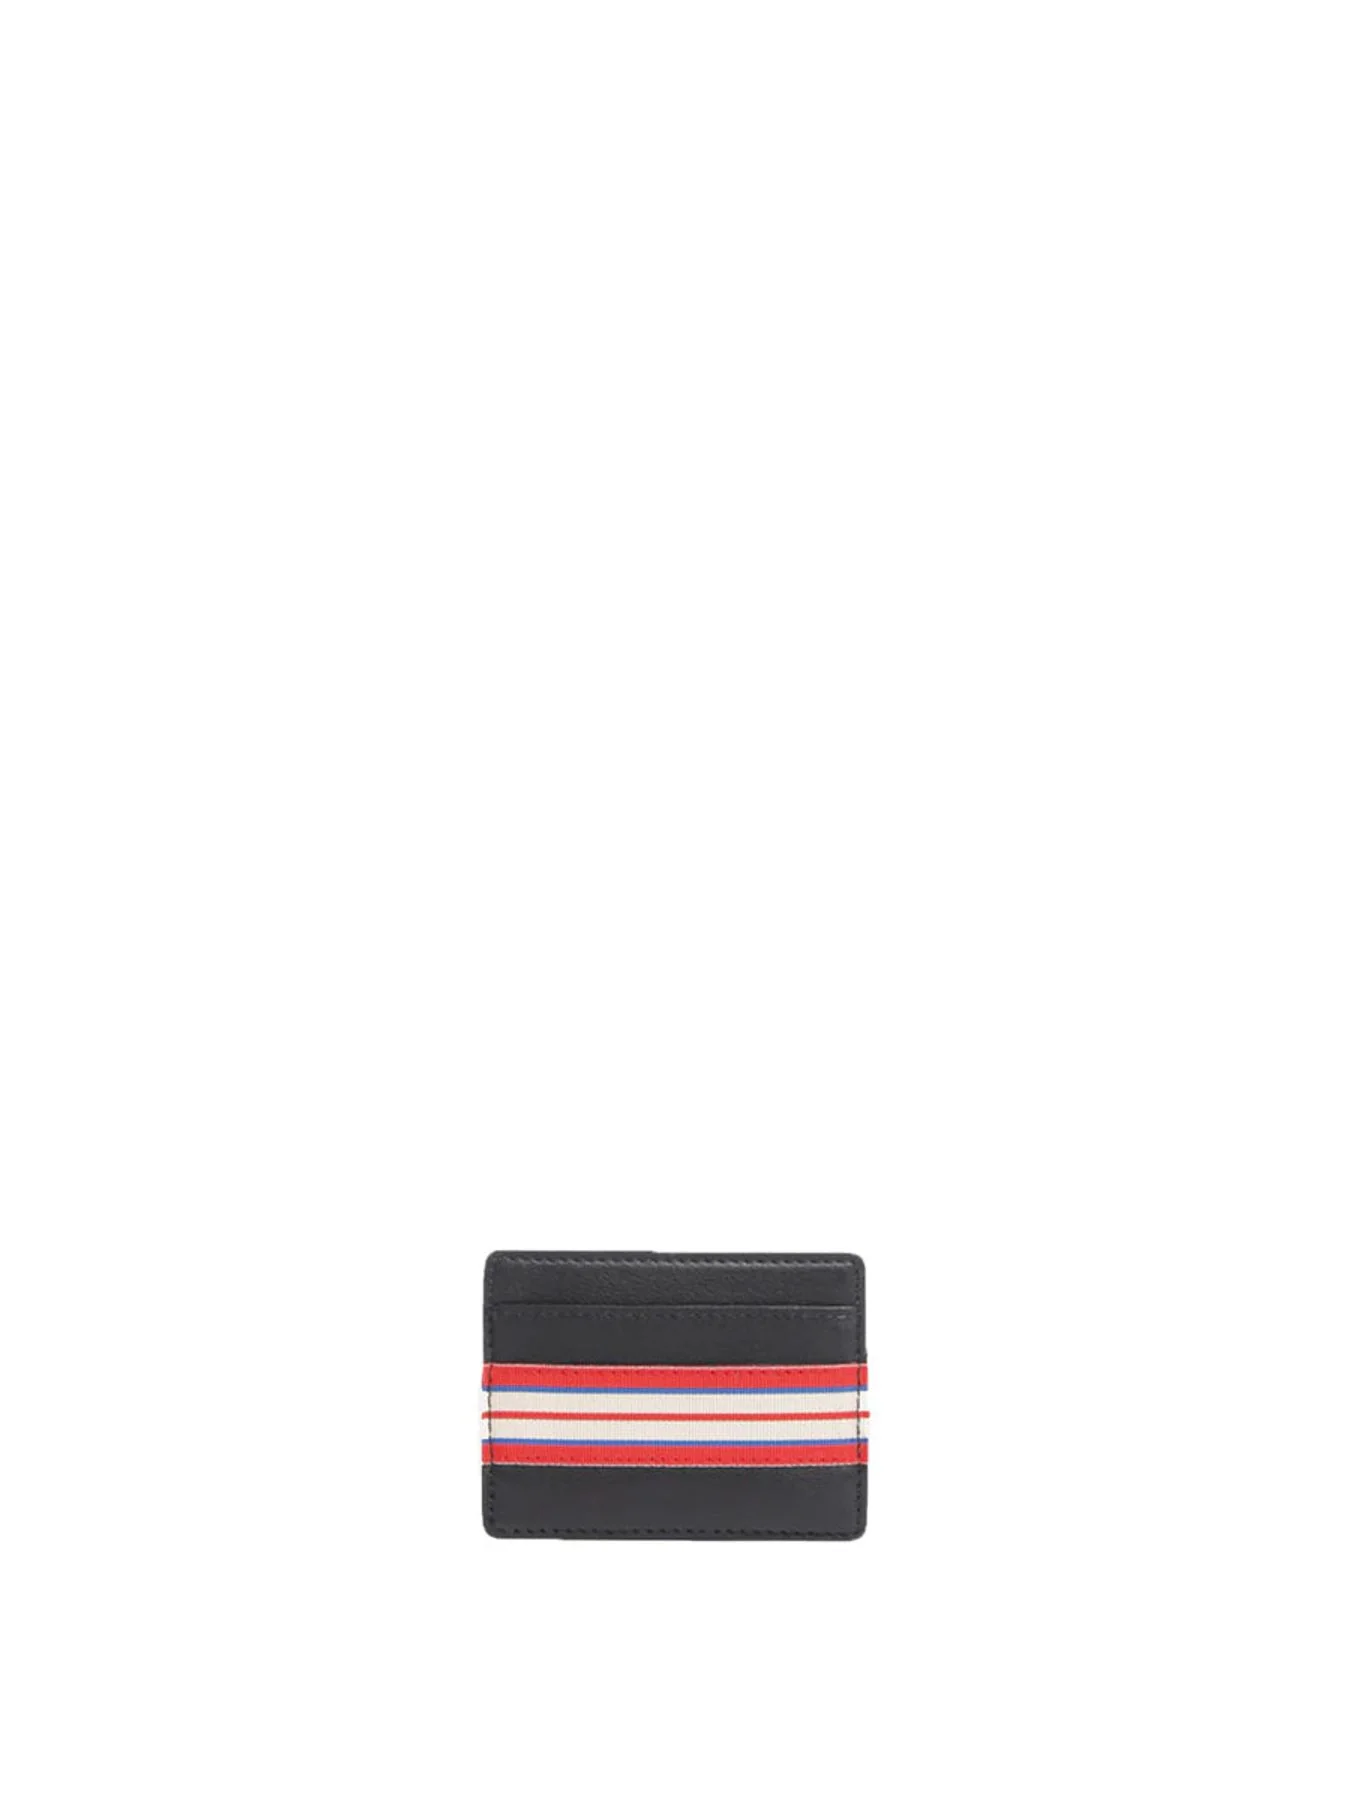 card-holder-simple-le-parisien-leather-black